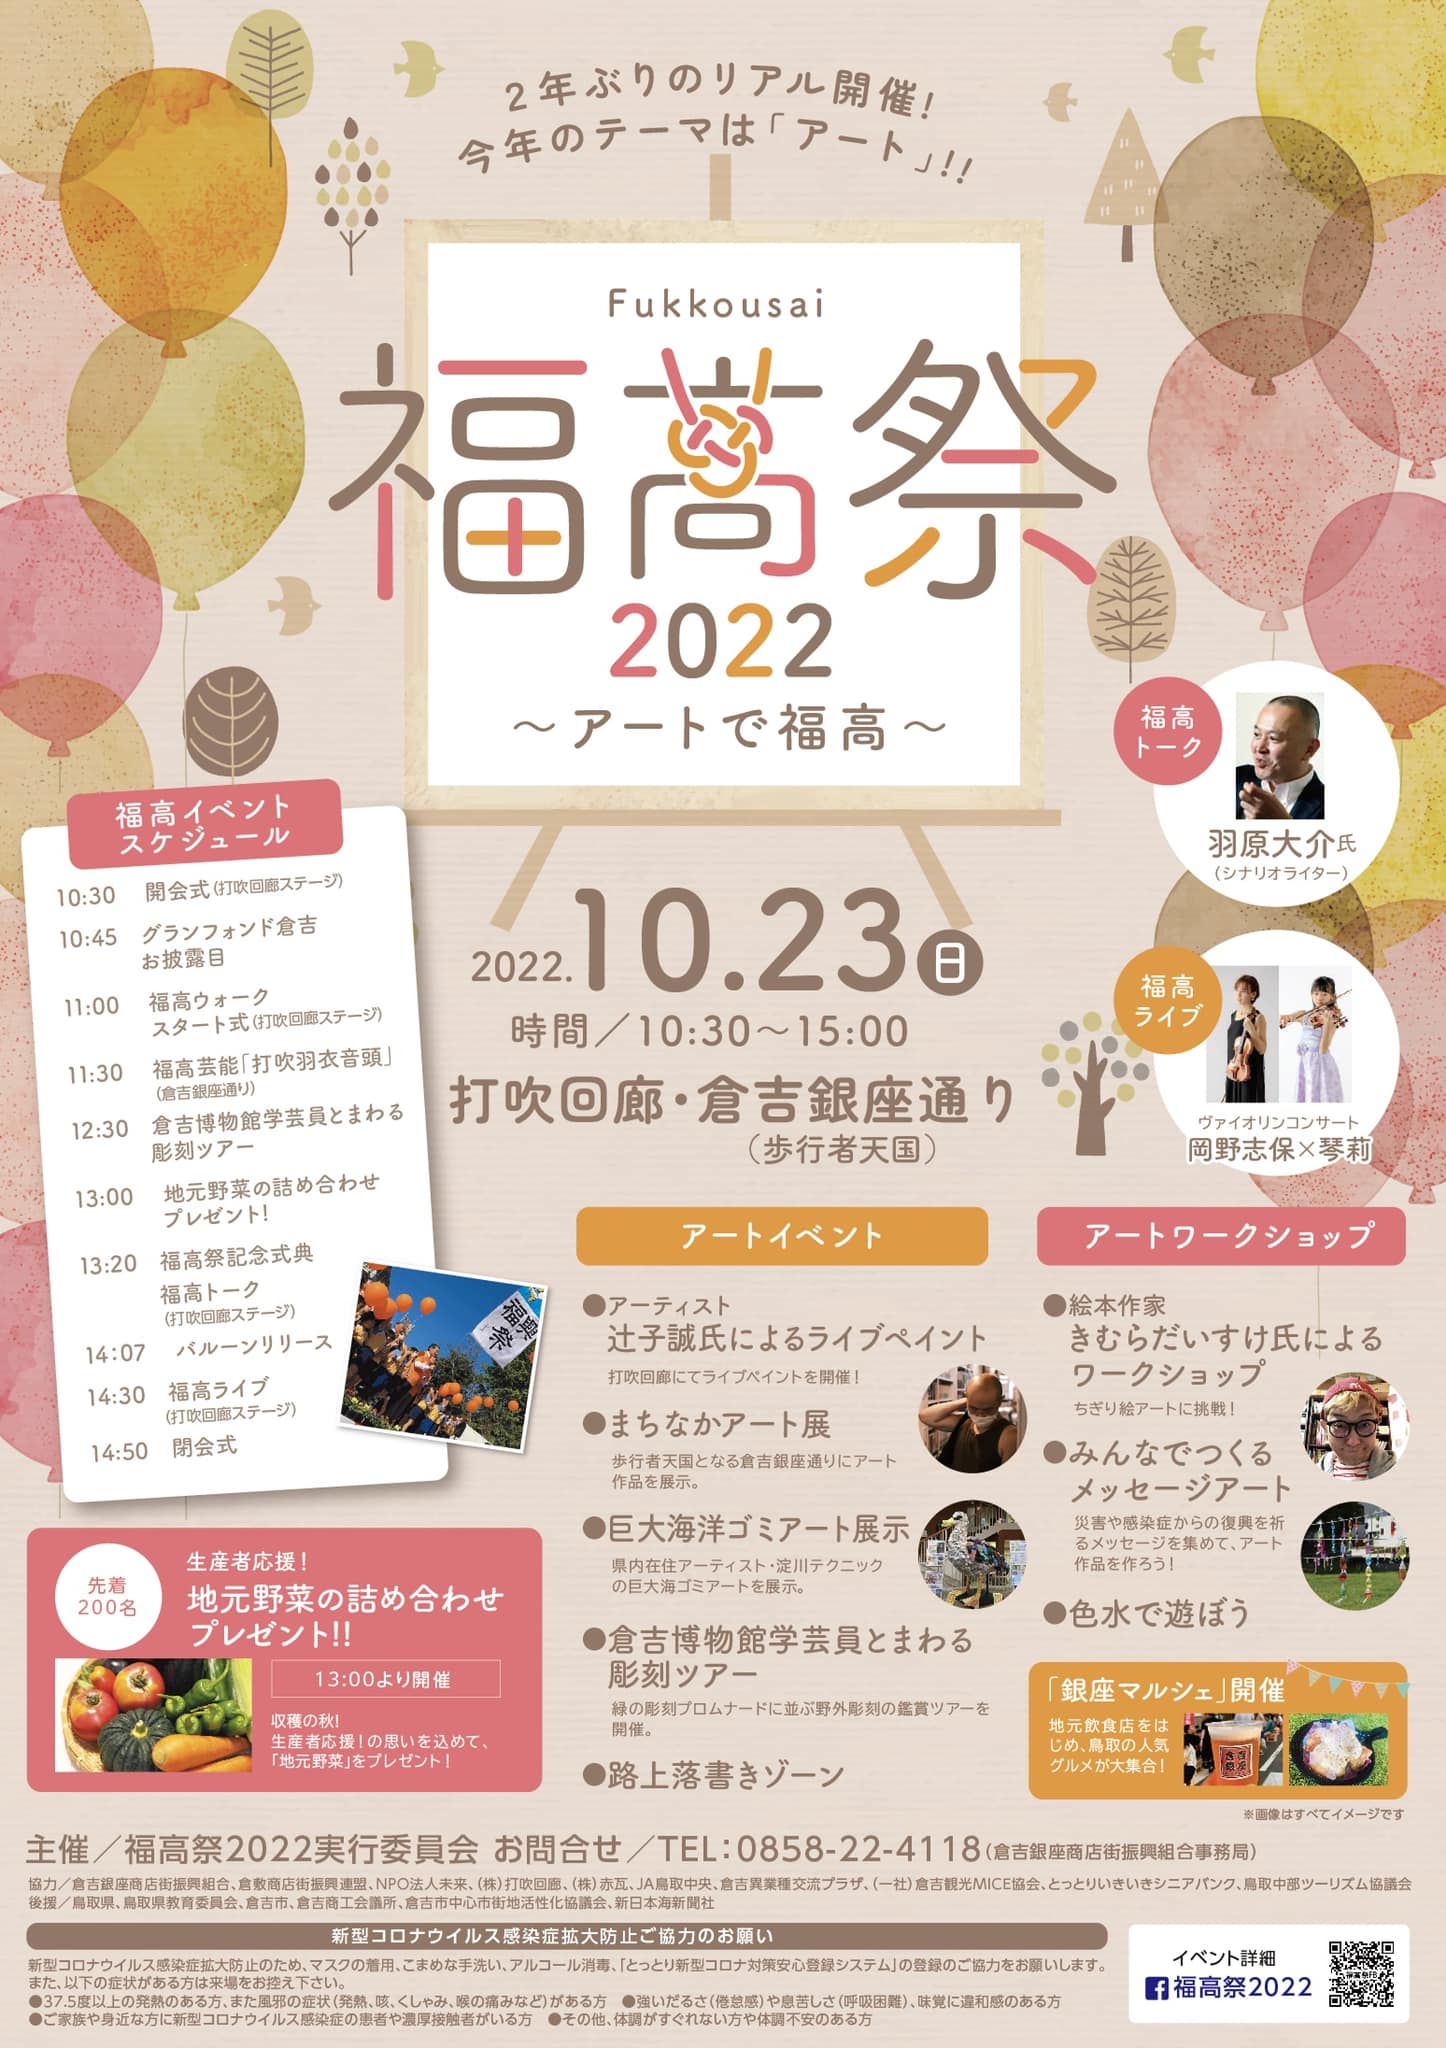 福高祭ポスター 【イベント】淀川テクニックの《とっとりプラホウドリ》を福高祭会場に展示します